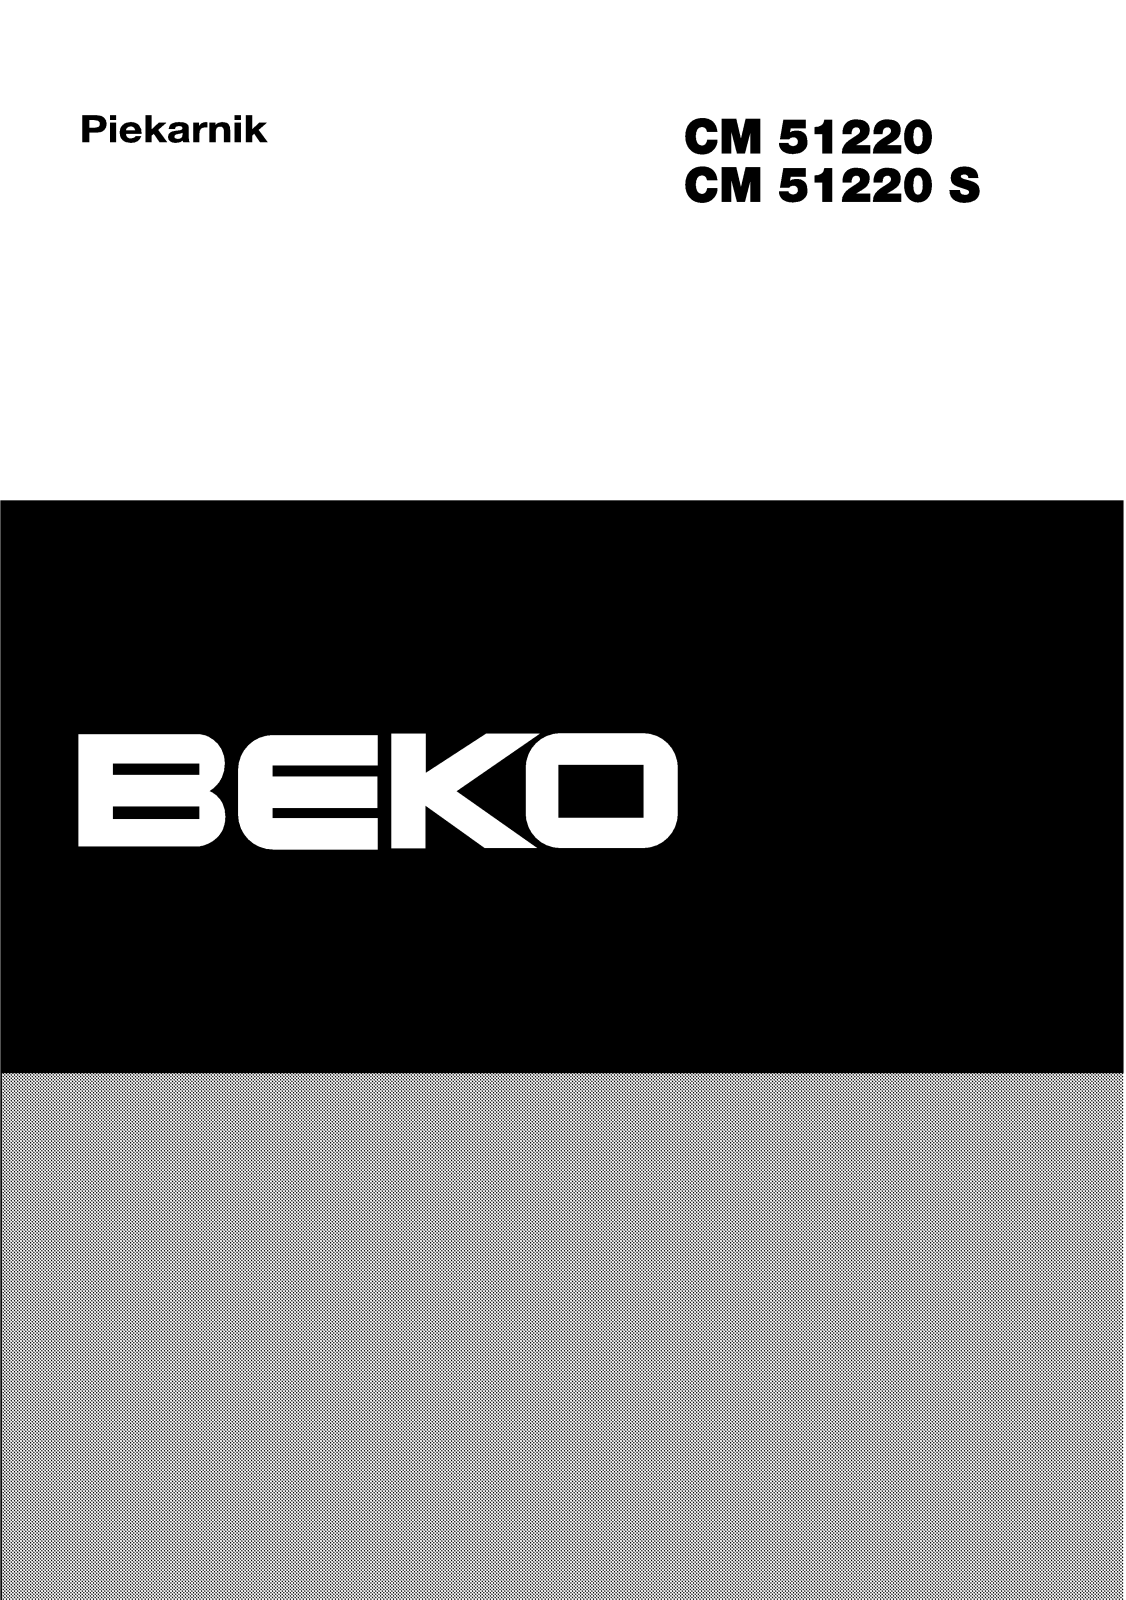 Beko CM 51220, CM 51220 S Manual